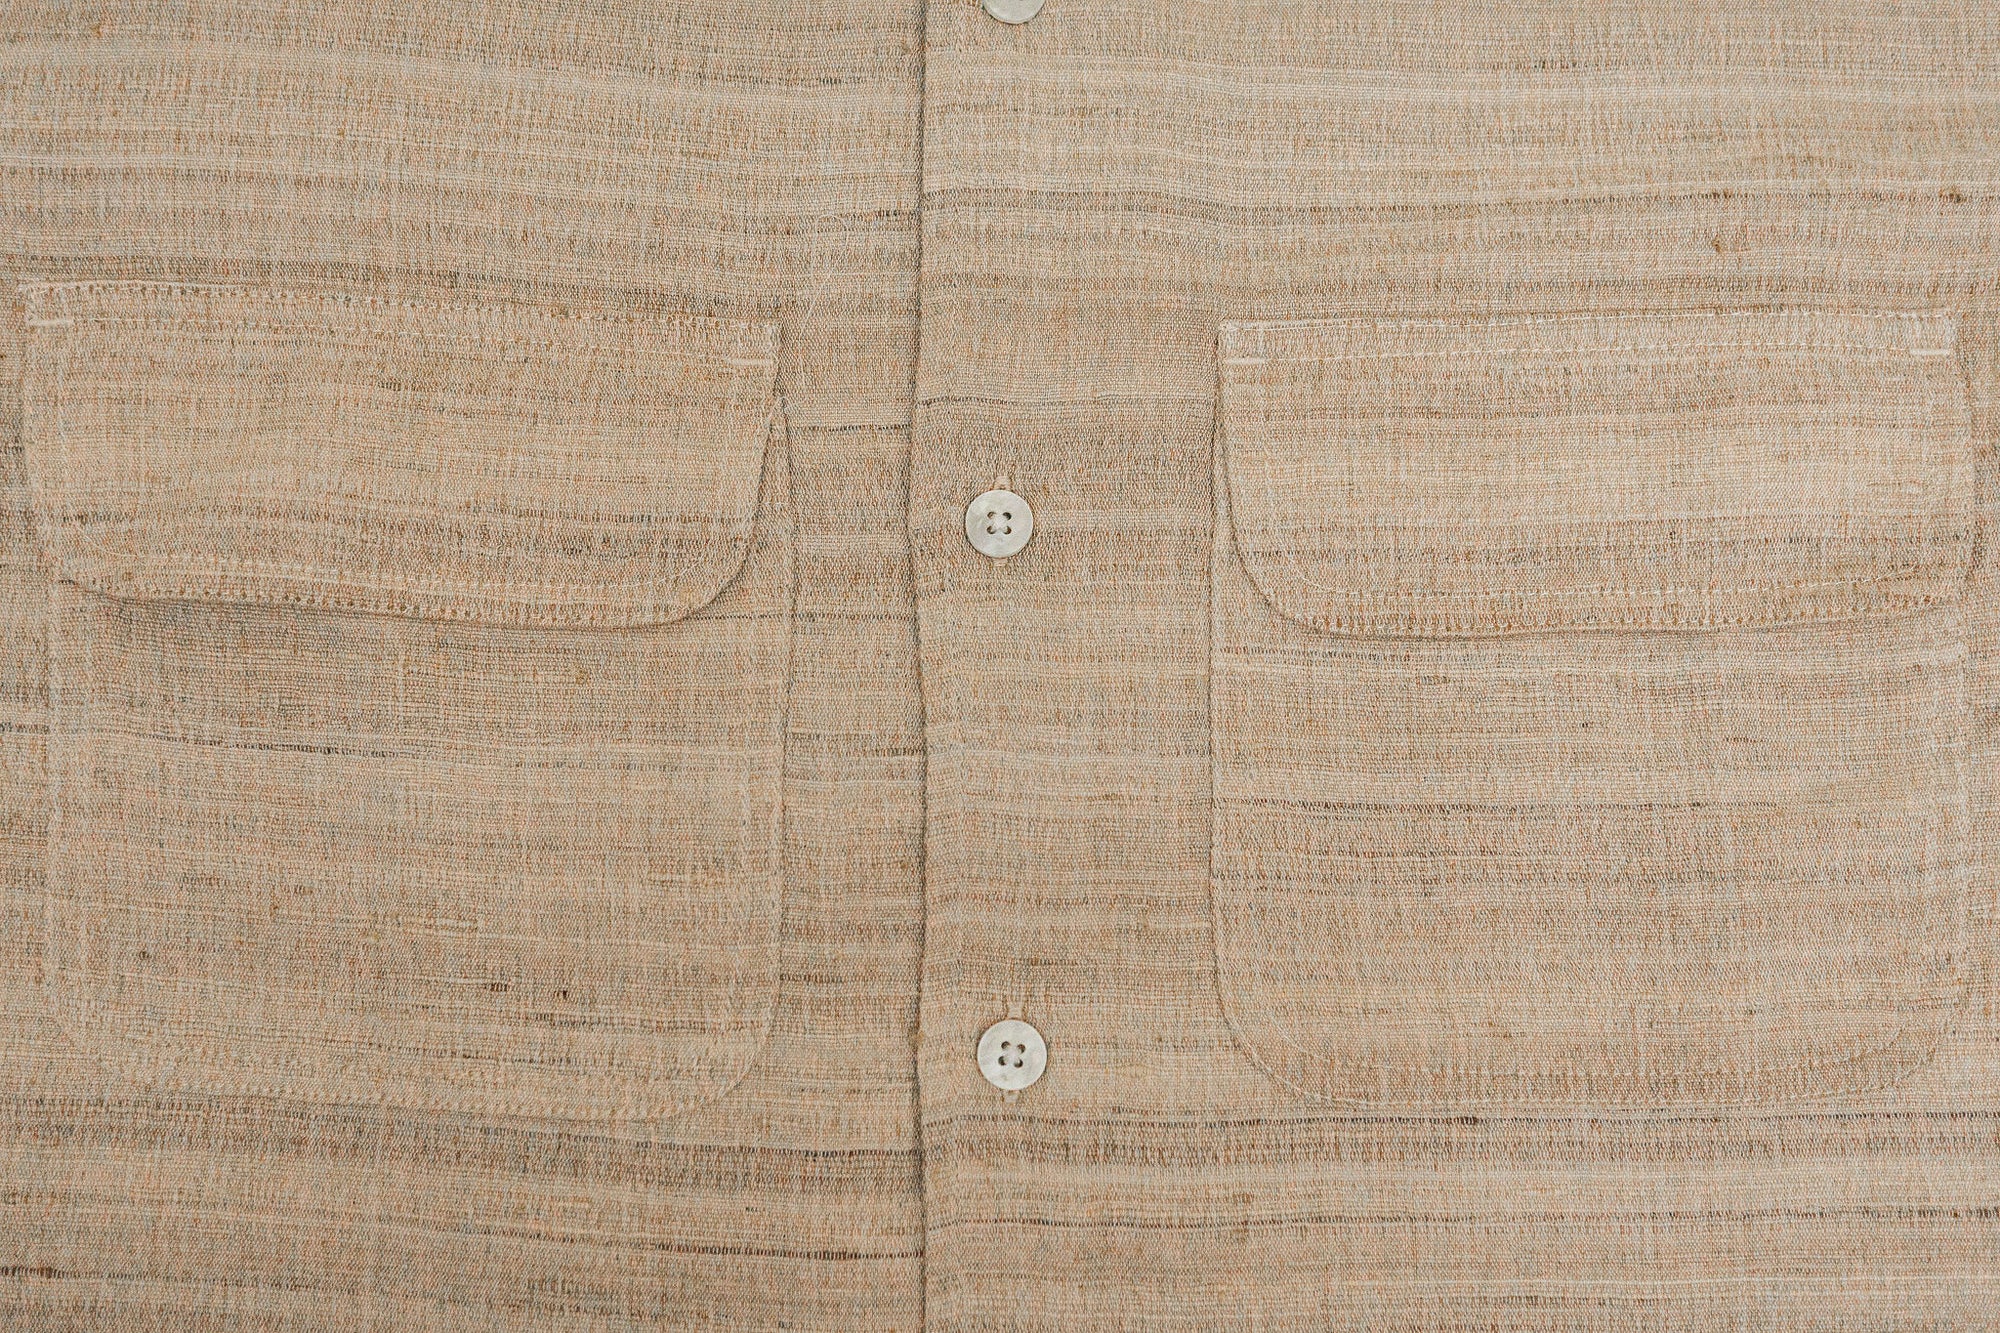 3sixteen Open Collar Shirt - Handloom Silk